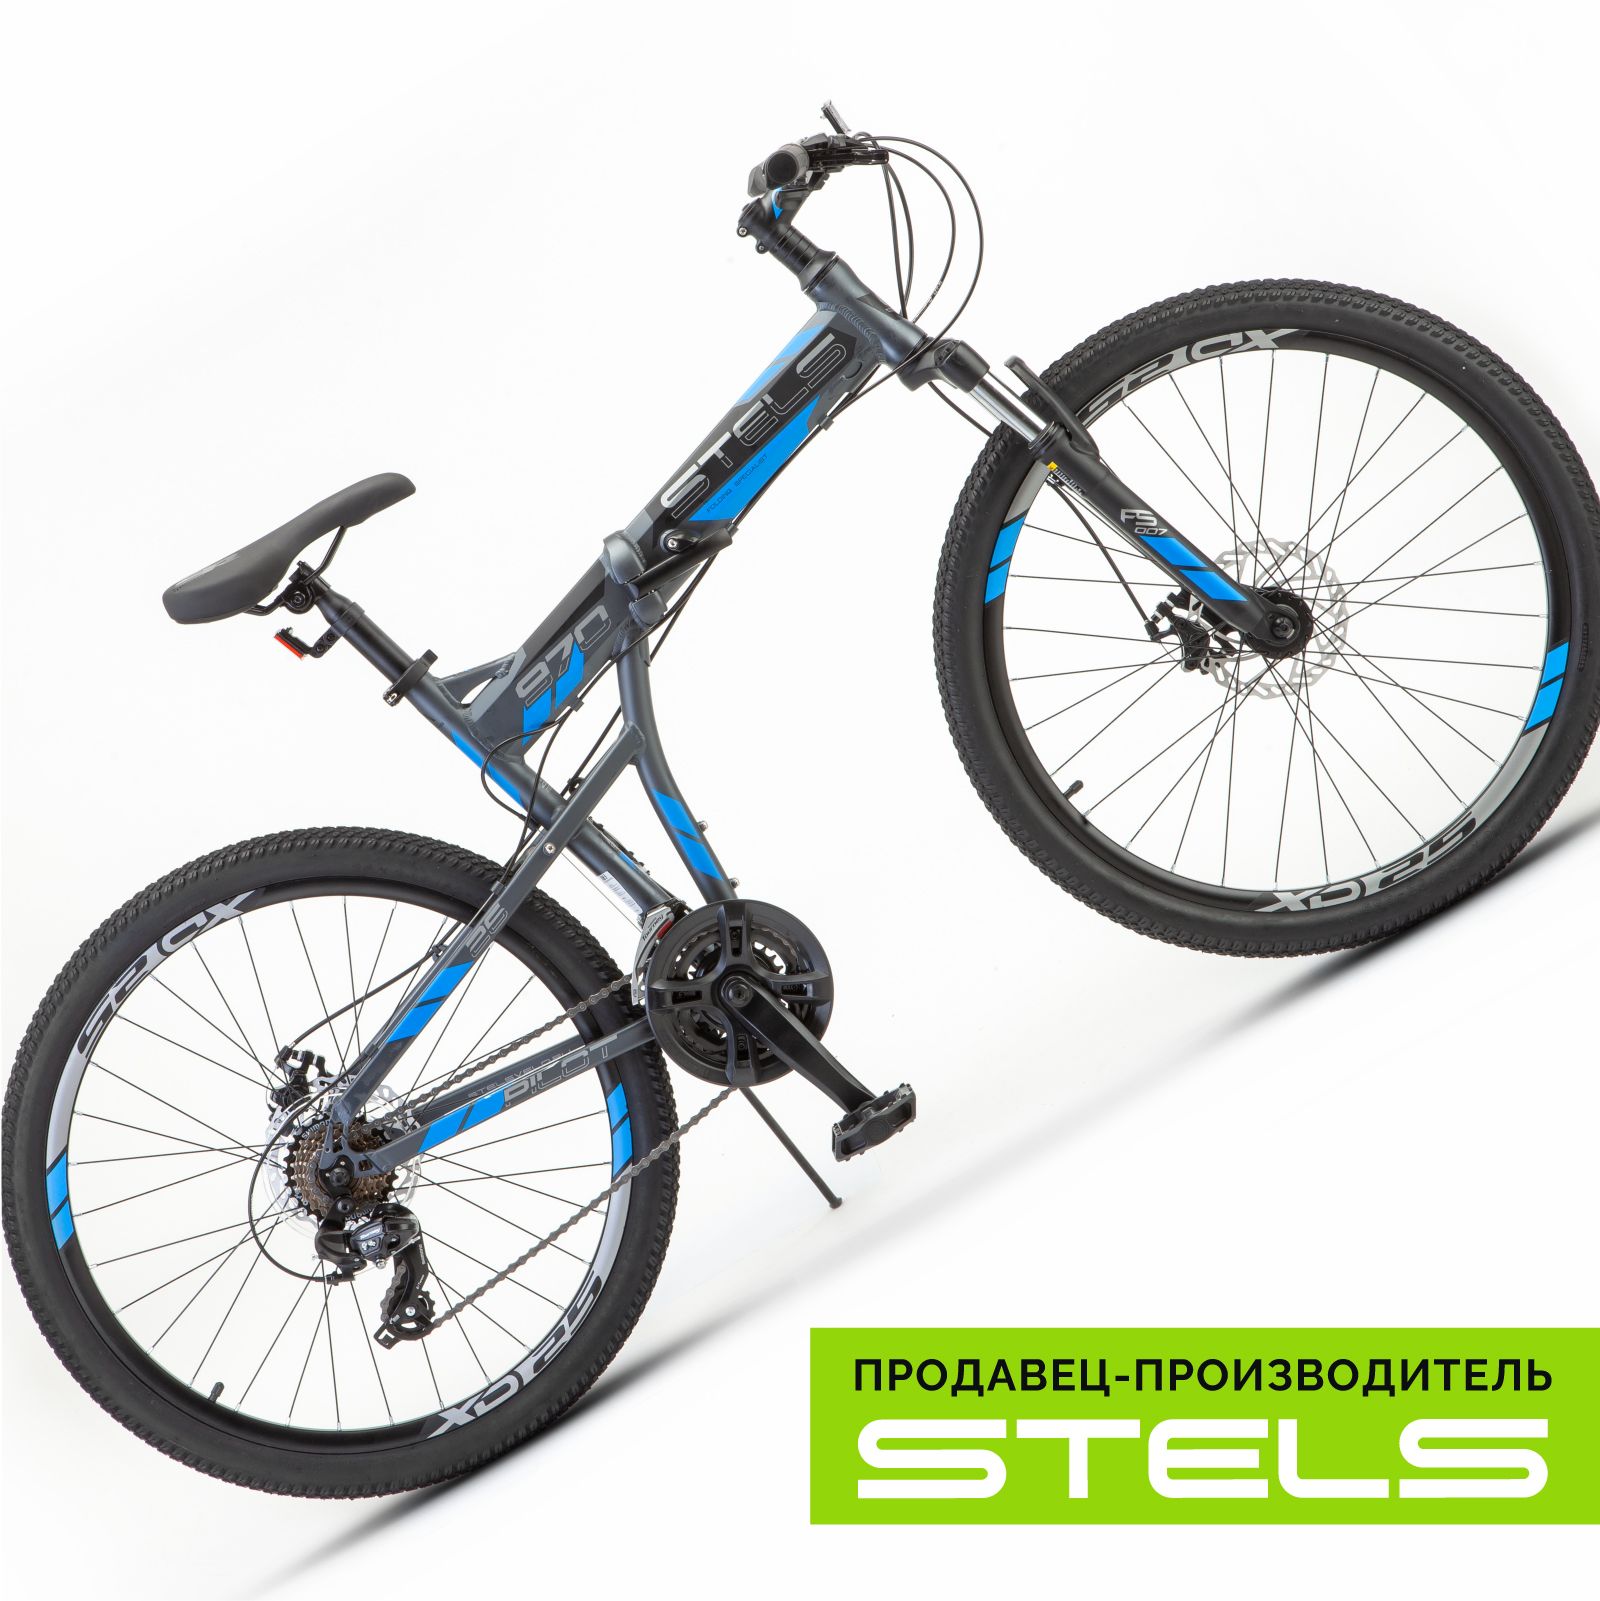 Велосипед stels pilot 970 md. Стелс 970 велосипед. Stels 970. Стелс 970vl расцветка.